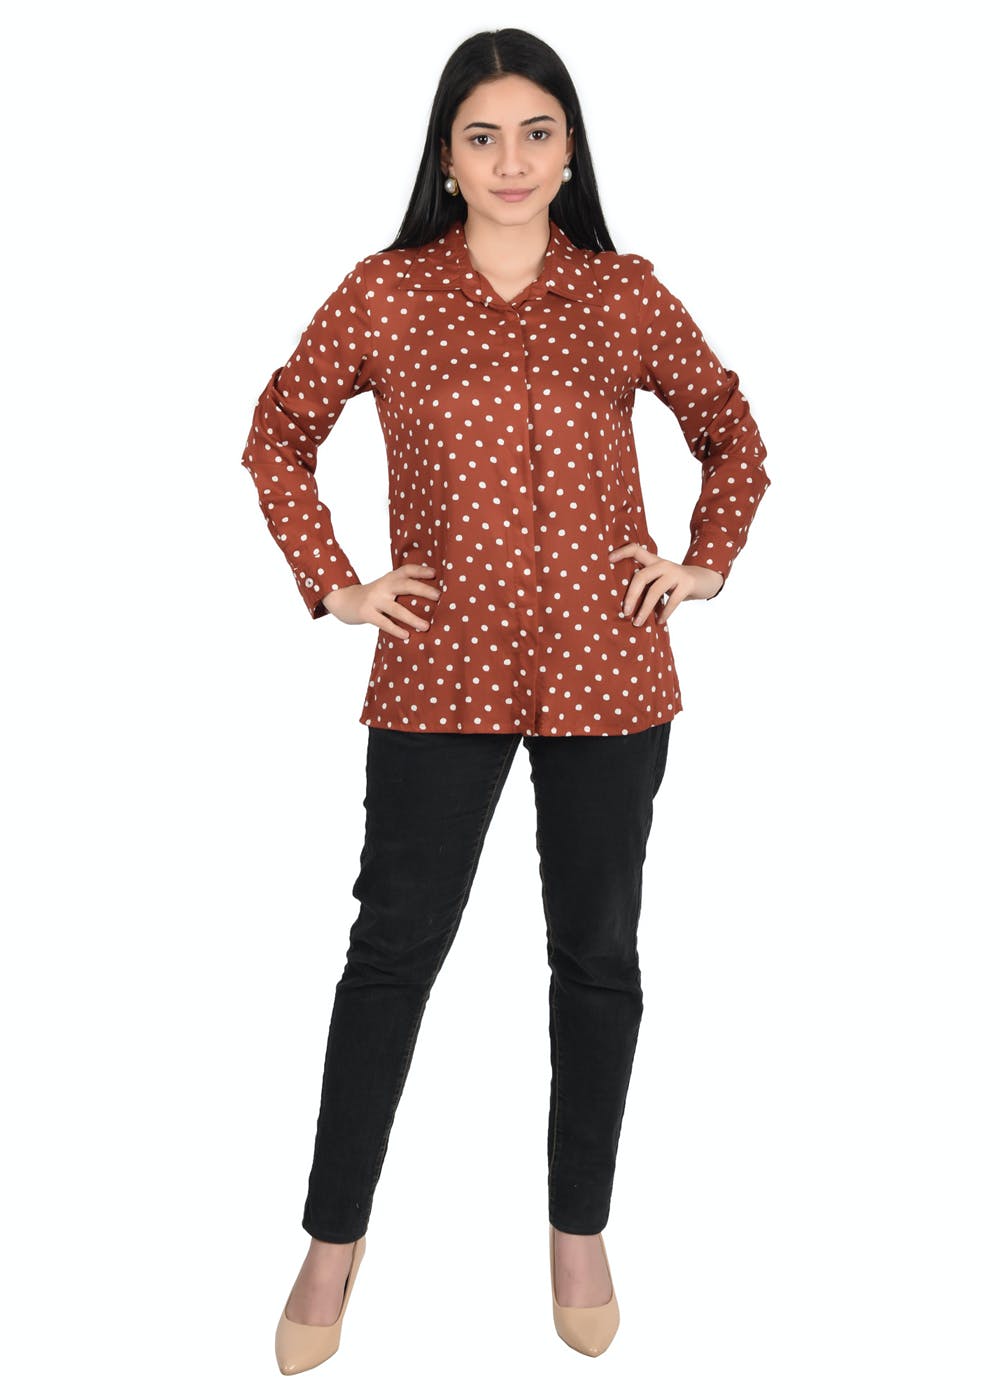 Get Contrast Polka Dots Detail Brown Shirt at ₹ 1079 | LBB Shop